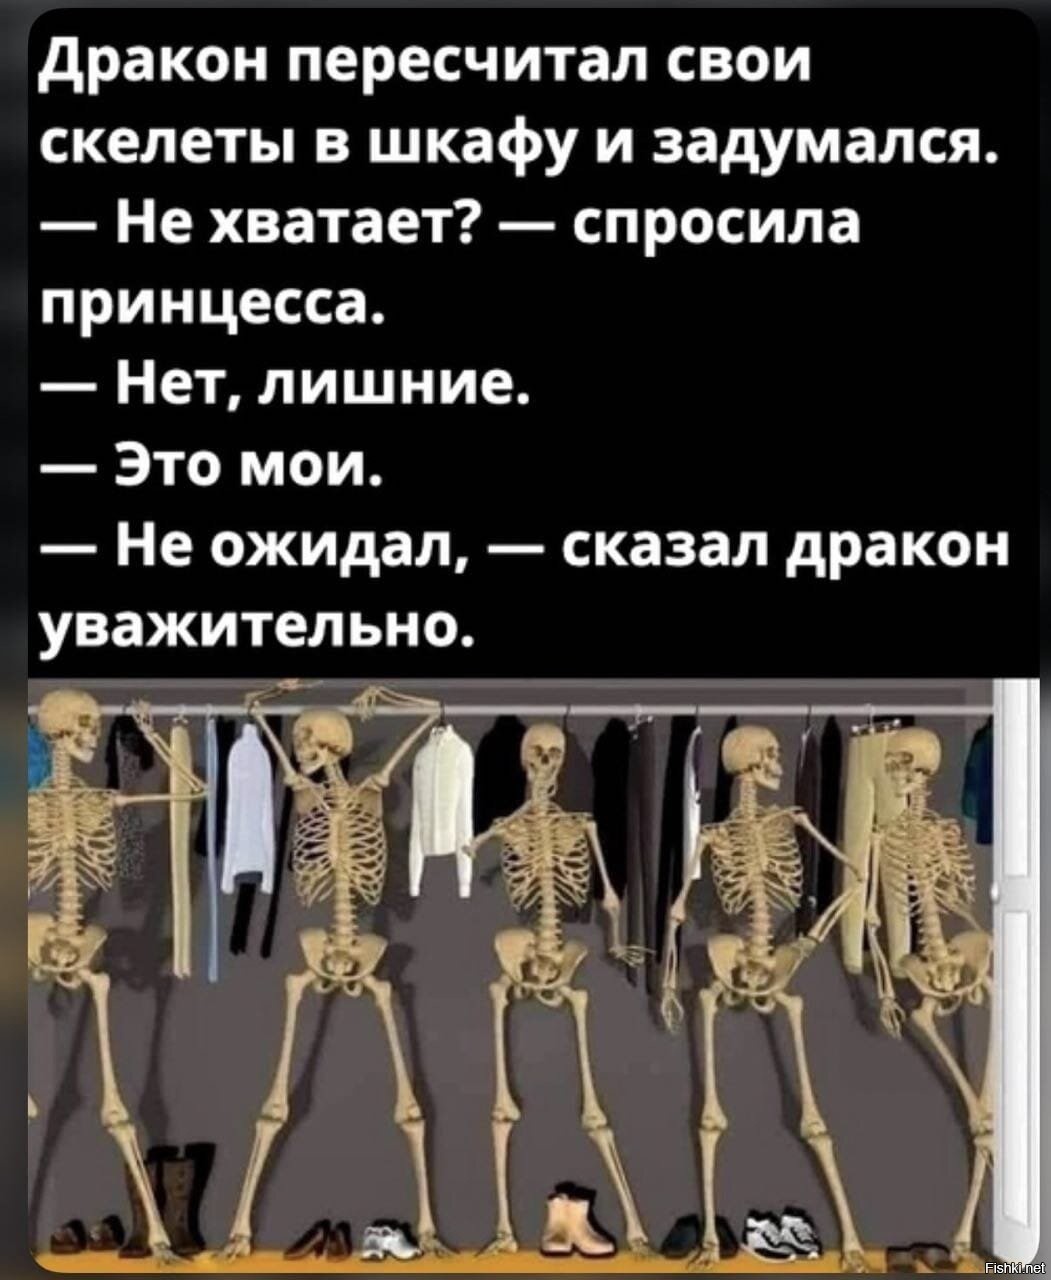 скелеты в шкафу российской истории